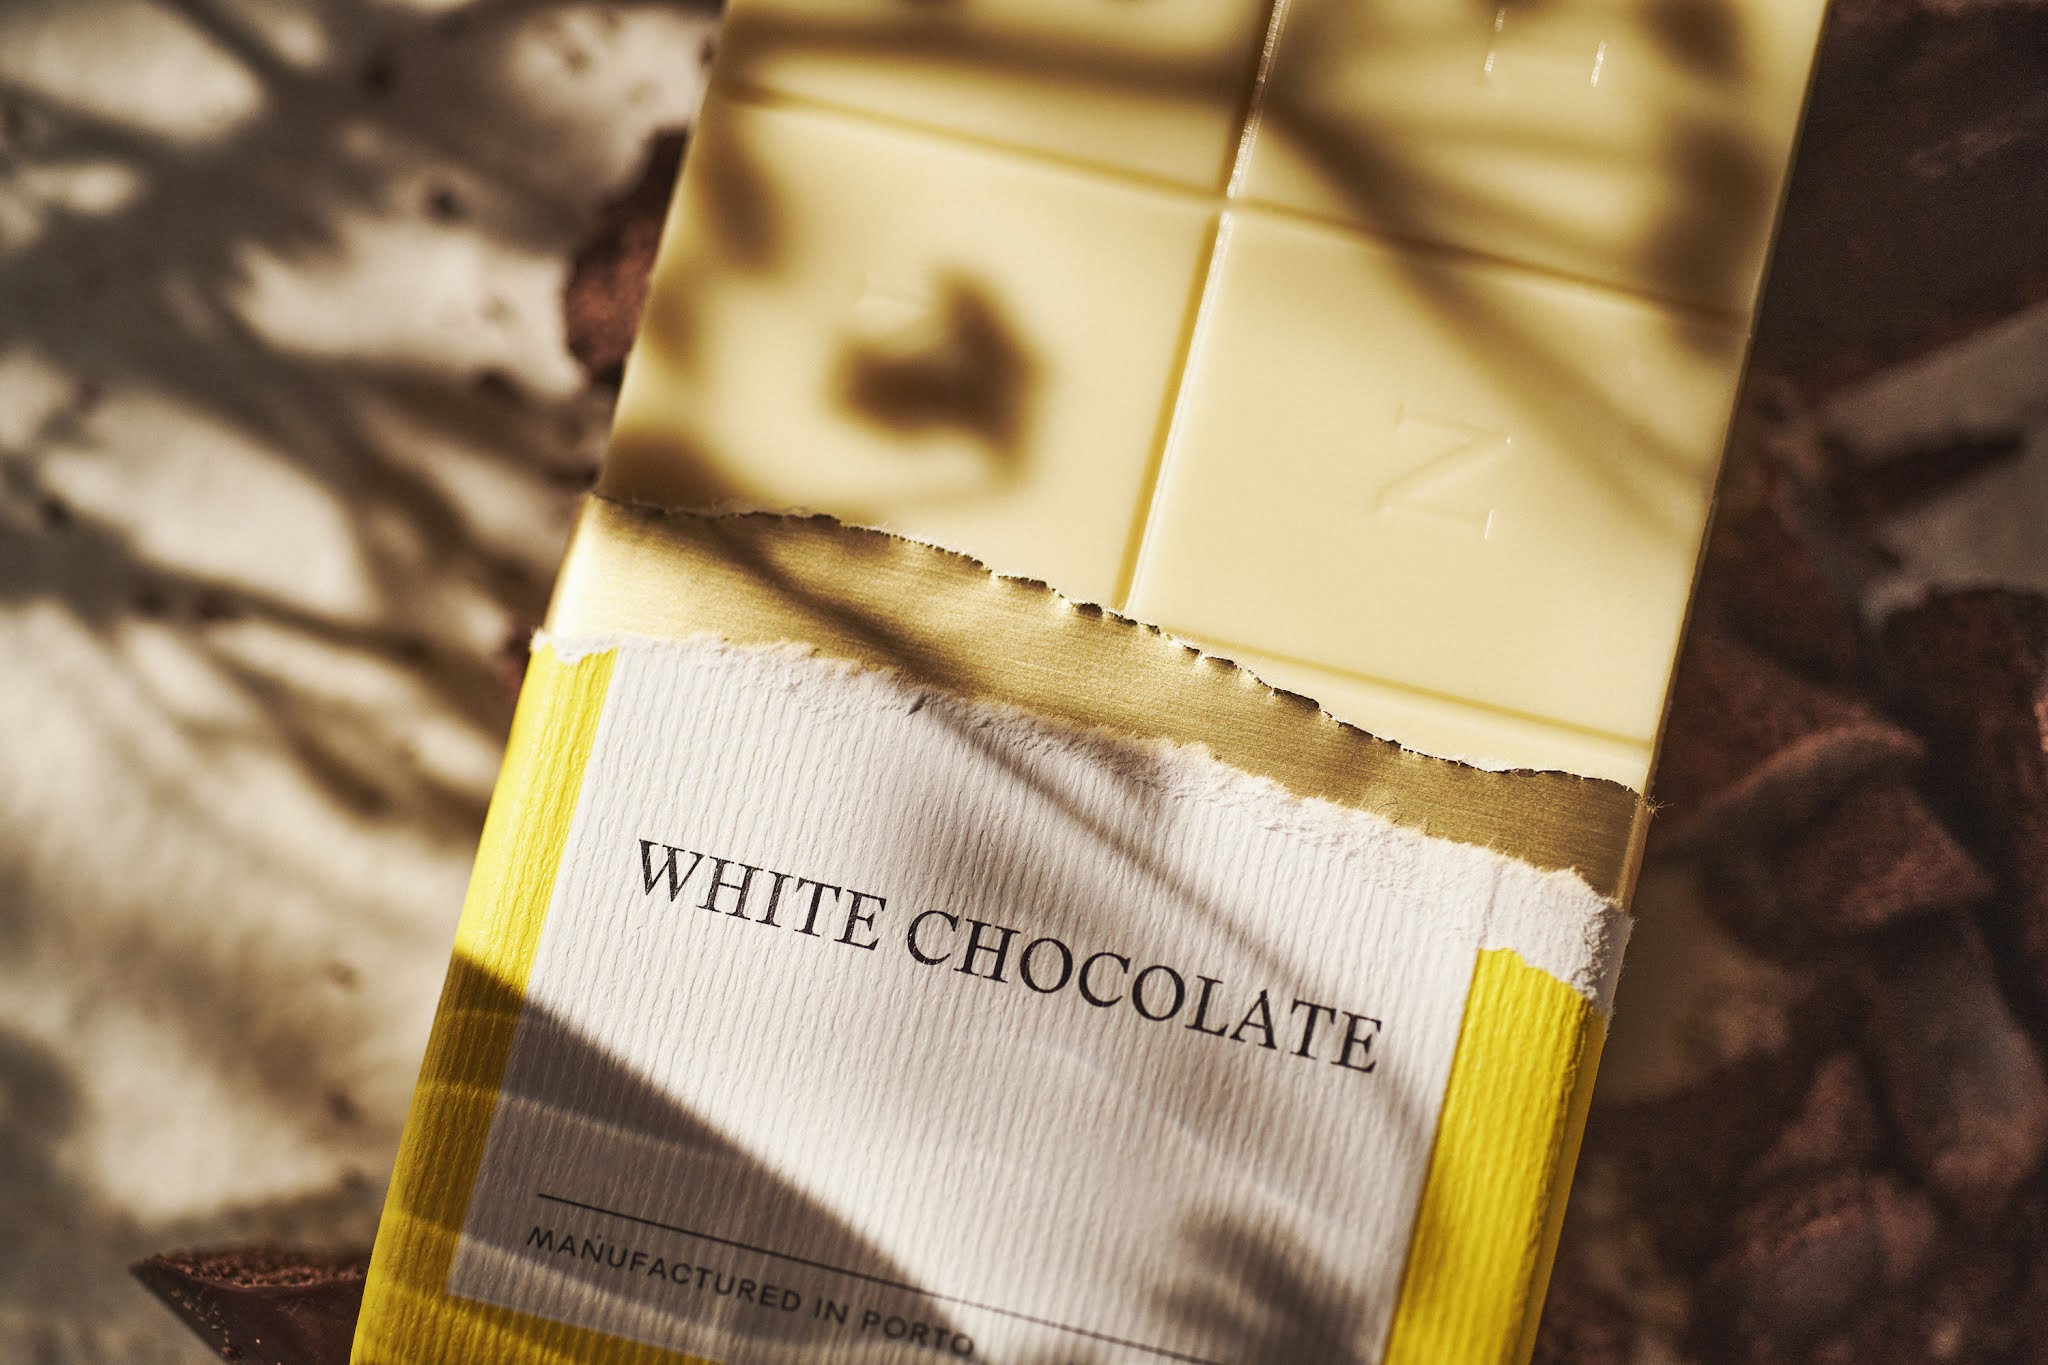 简约高级感的巧克力包装设计作品欣赏。